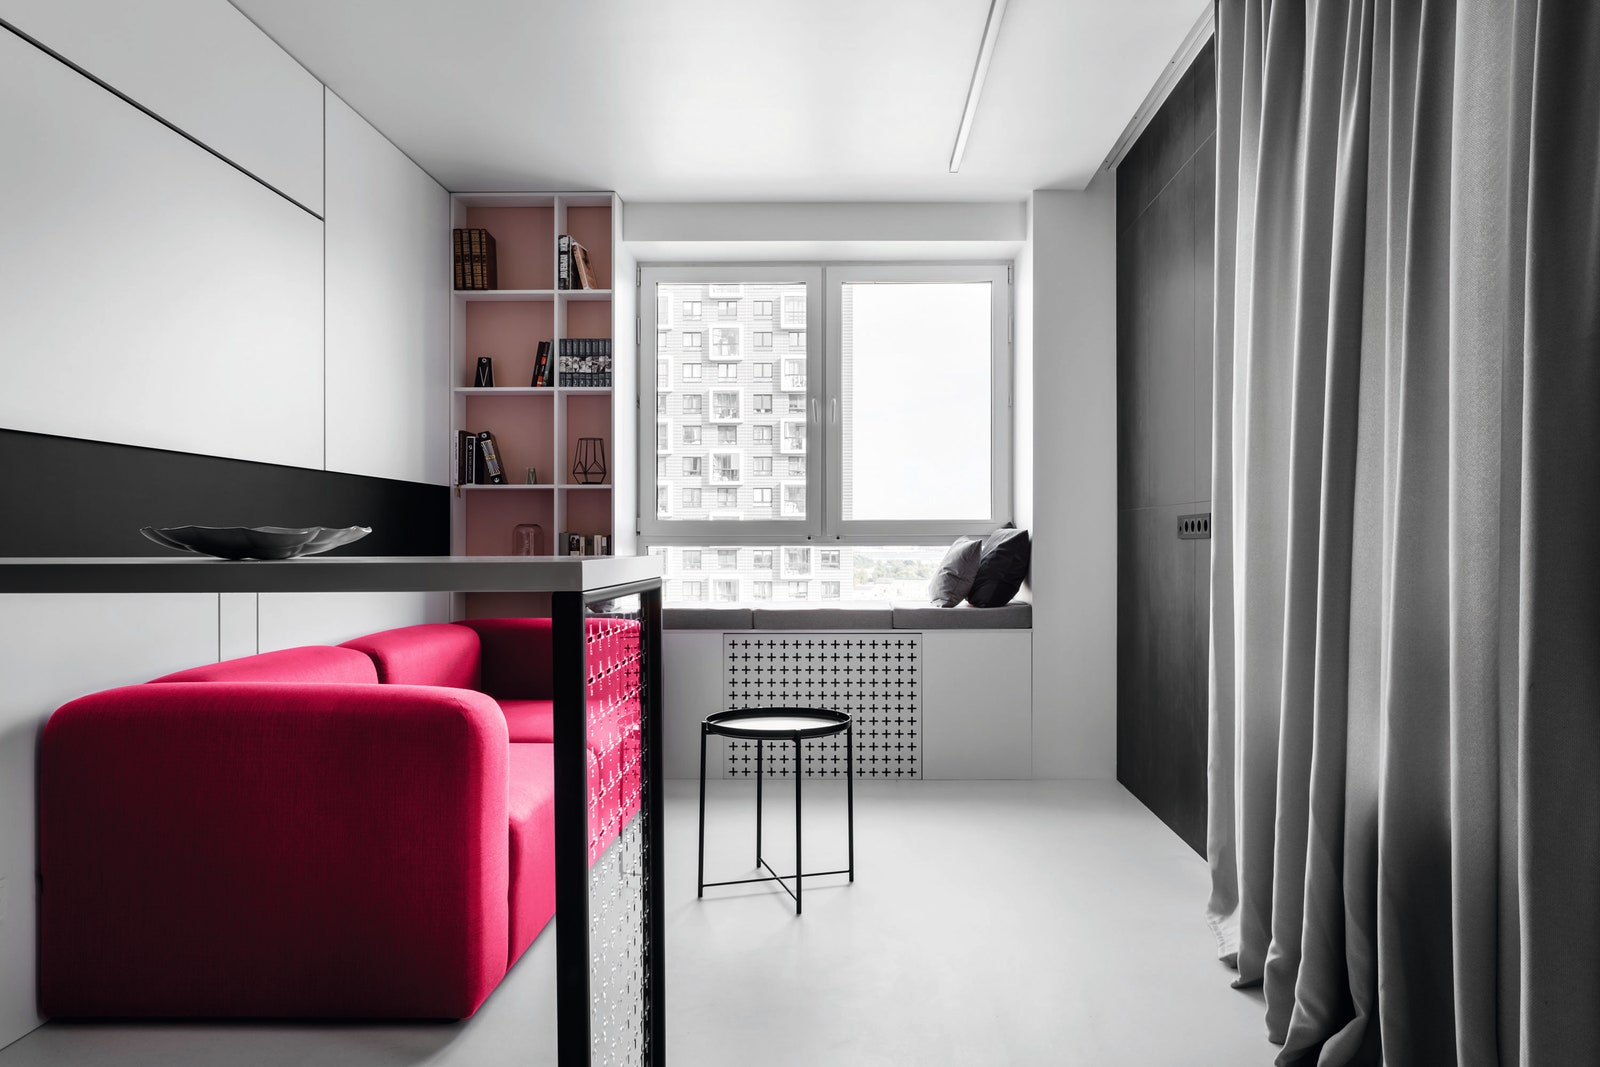 Графичная квартира с яркими вставками цвета 52 м². Гостиная. Диван Delo Design журнальный стол IKEA барные стулья...